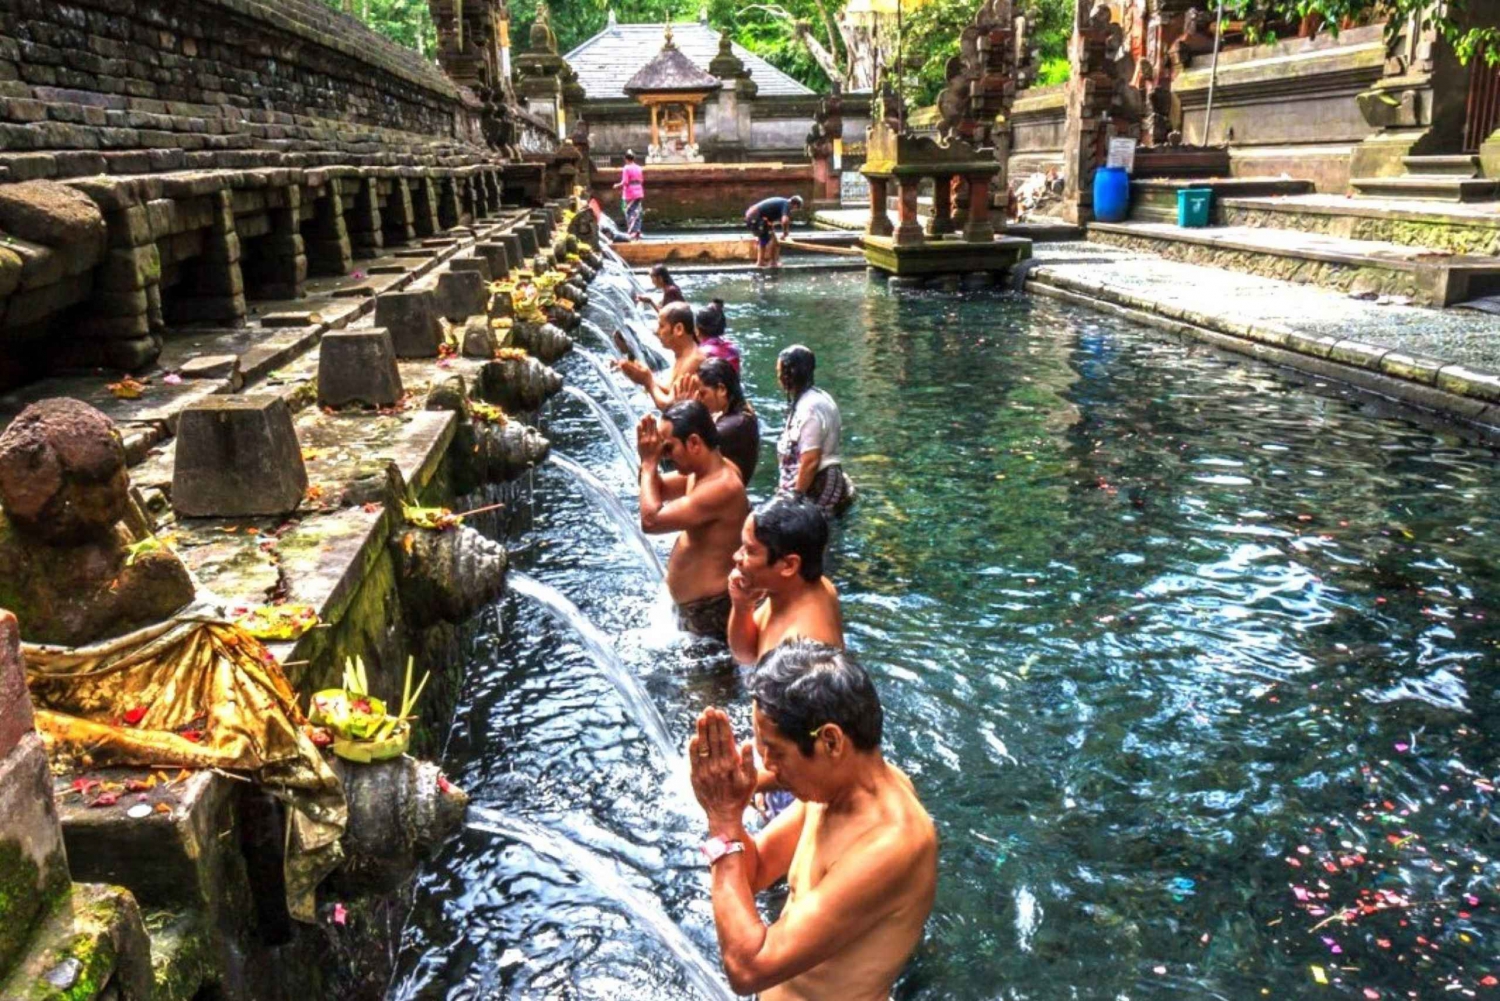 Cascata di Ubud, terrazza di riso di Tegalalang e tempio di Tirta empul